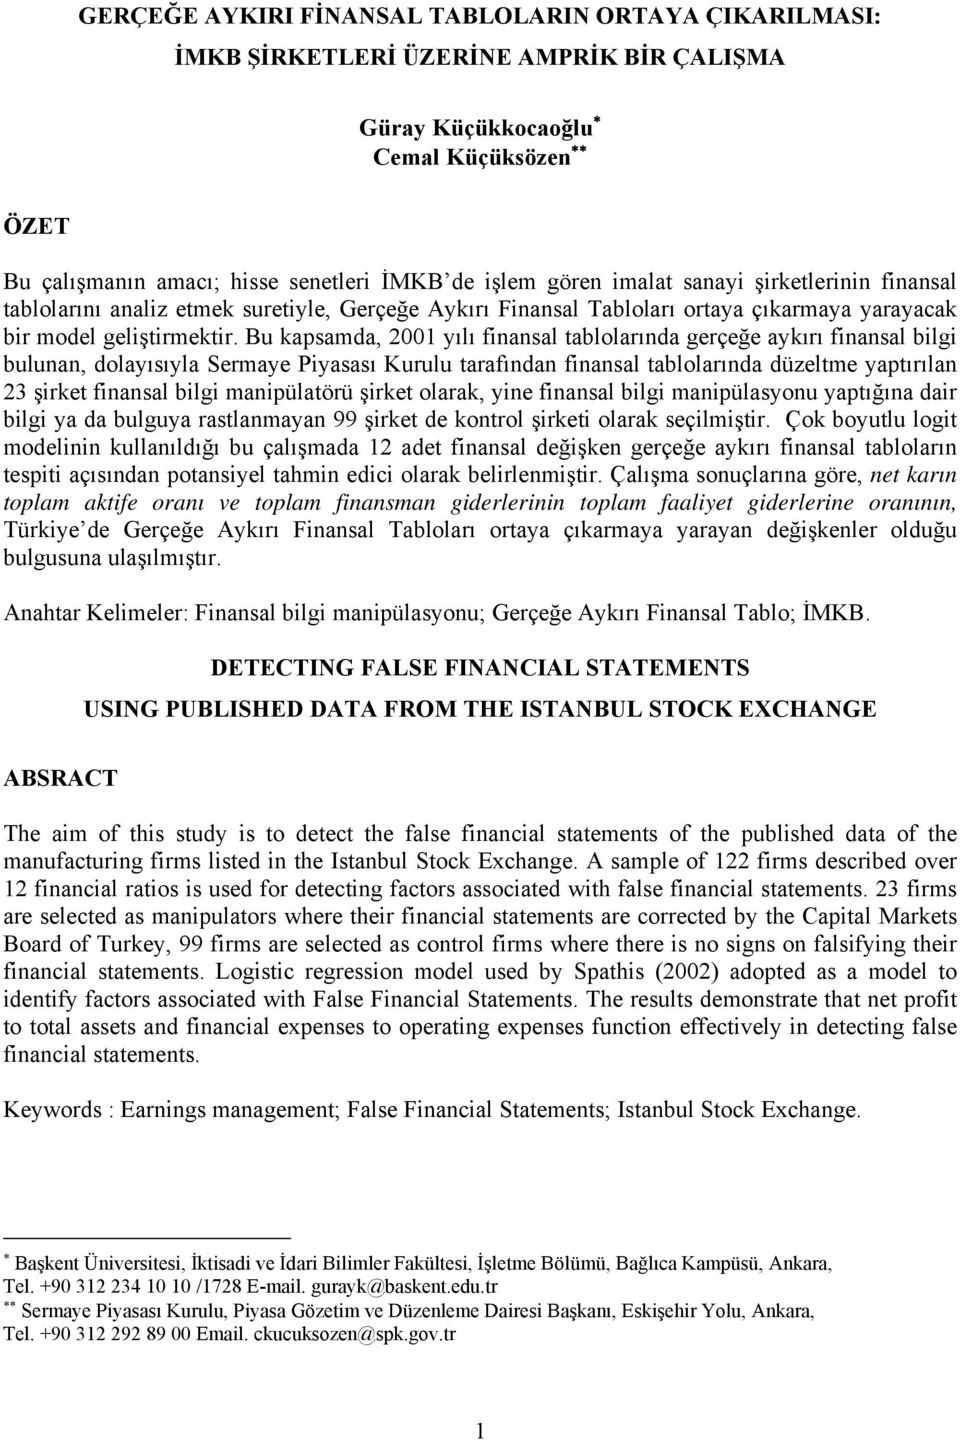 Bu kapsamda, 2001 yılı finansal tablolarında gerçeğe aykırı finansal bilgi bulunan, dolayısıyla Sermaye Piyasası Kurulu tarafından finansal tablolarında düzeltme yaptırılan 23 şirket finansal bilgi